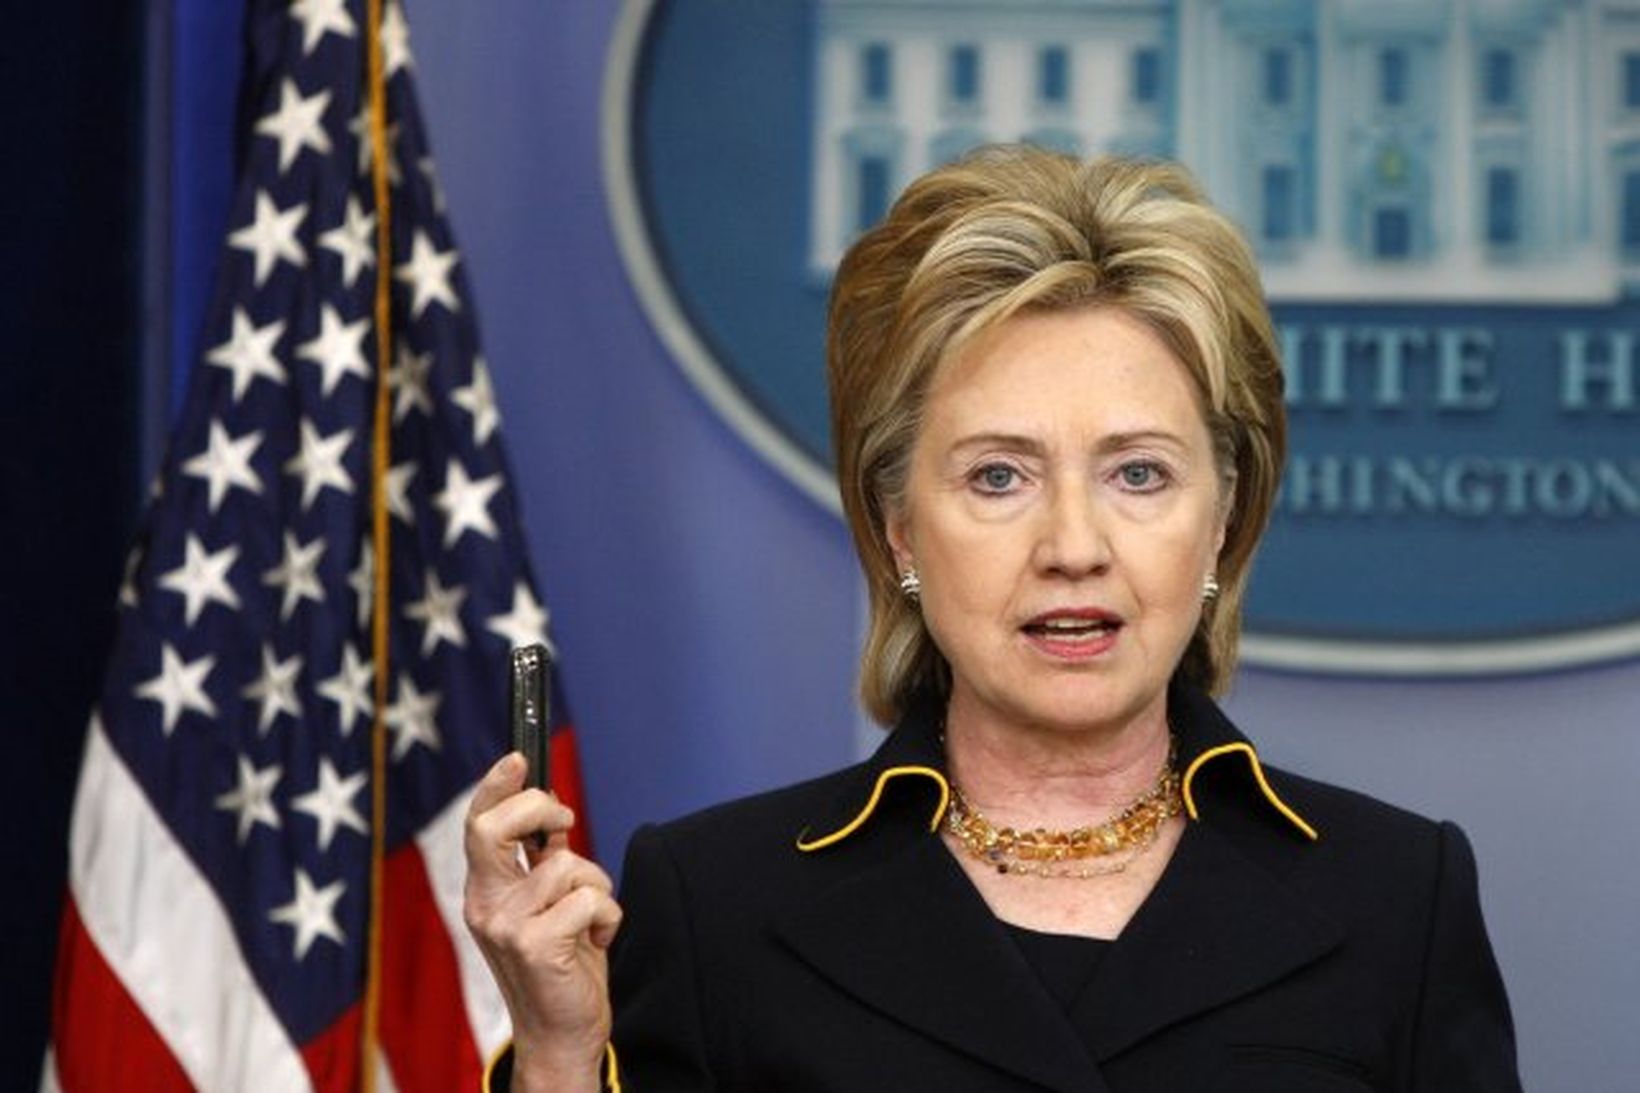 Hillary Clinton, utanríkisráðherra Bandaríkjanna, er ekki ánægð með kjarnorkutilraunir N-Kóreumanna.